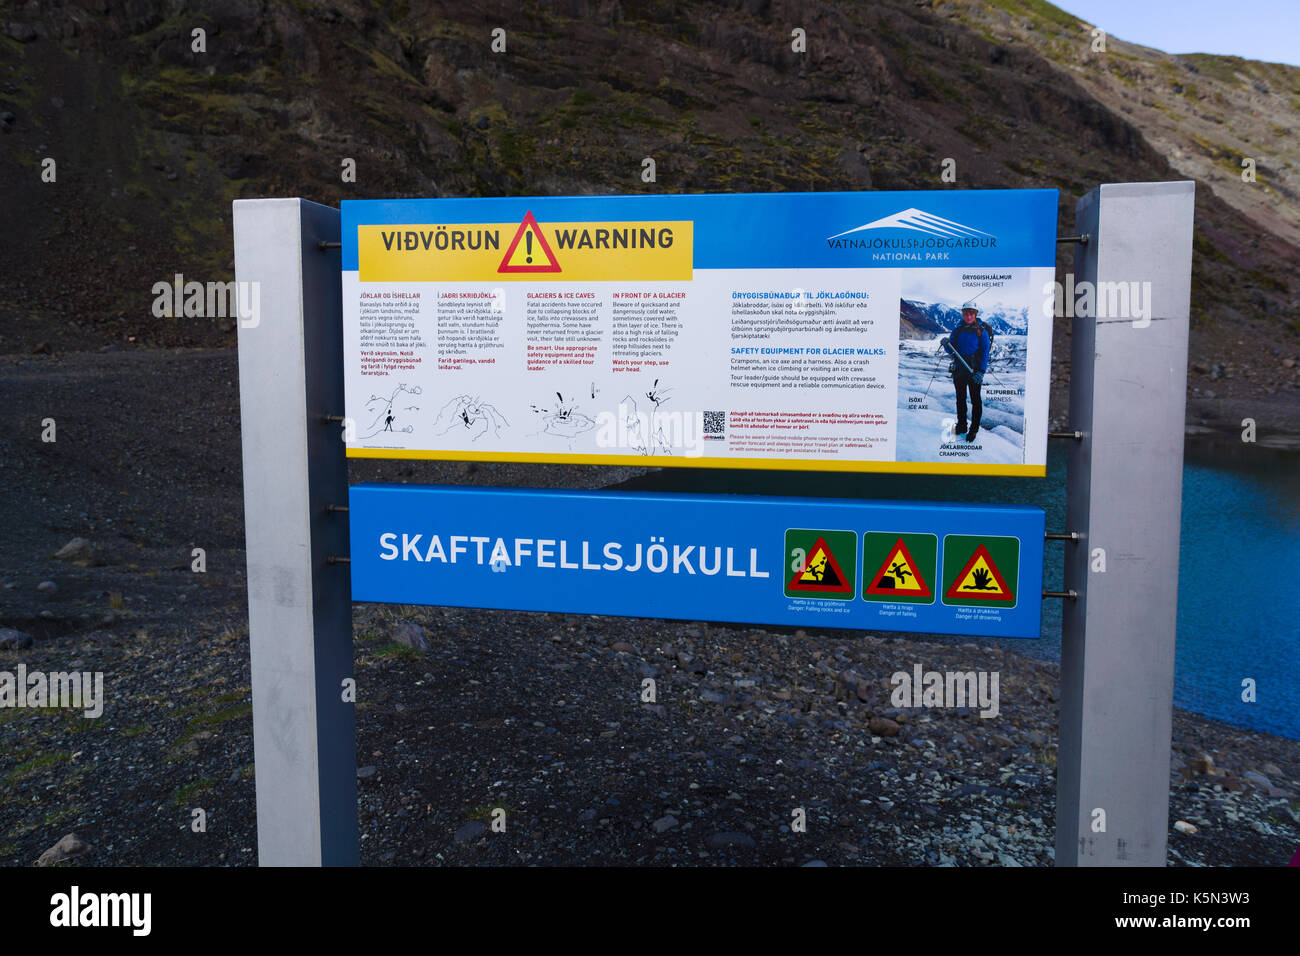 Panneau avertissant les visiteurs des dangers de la marche sur glacier. Glacier Skaftafellsjökull, région de Skaftafell, Parc national de Vatnajölkull, Islande. Banque D'Images